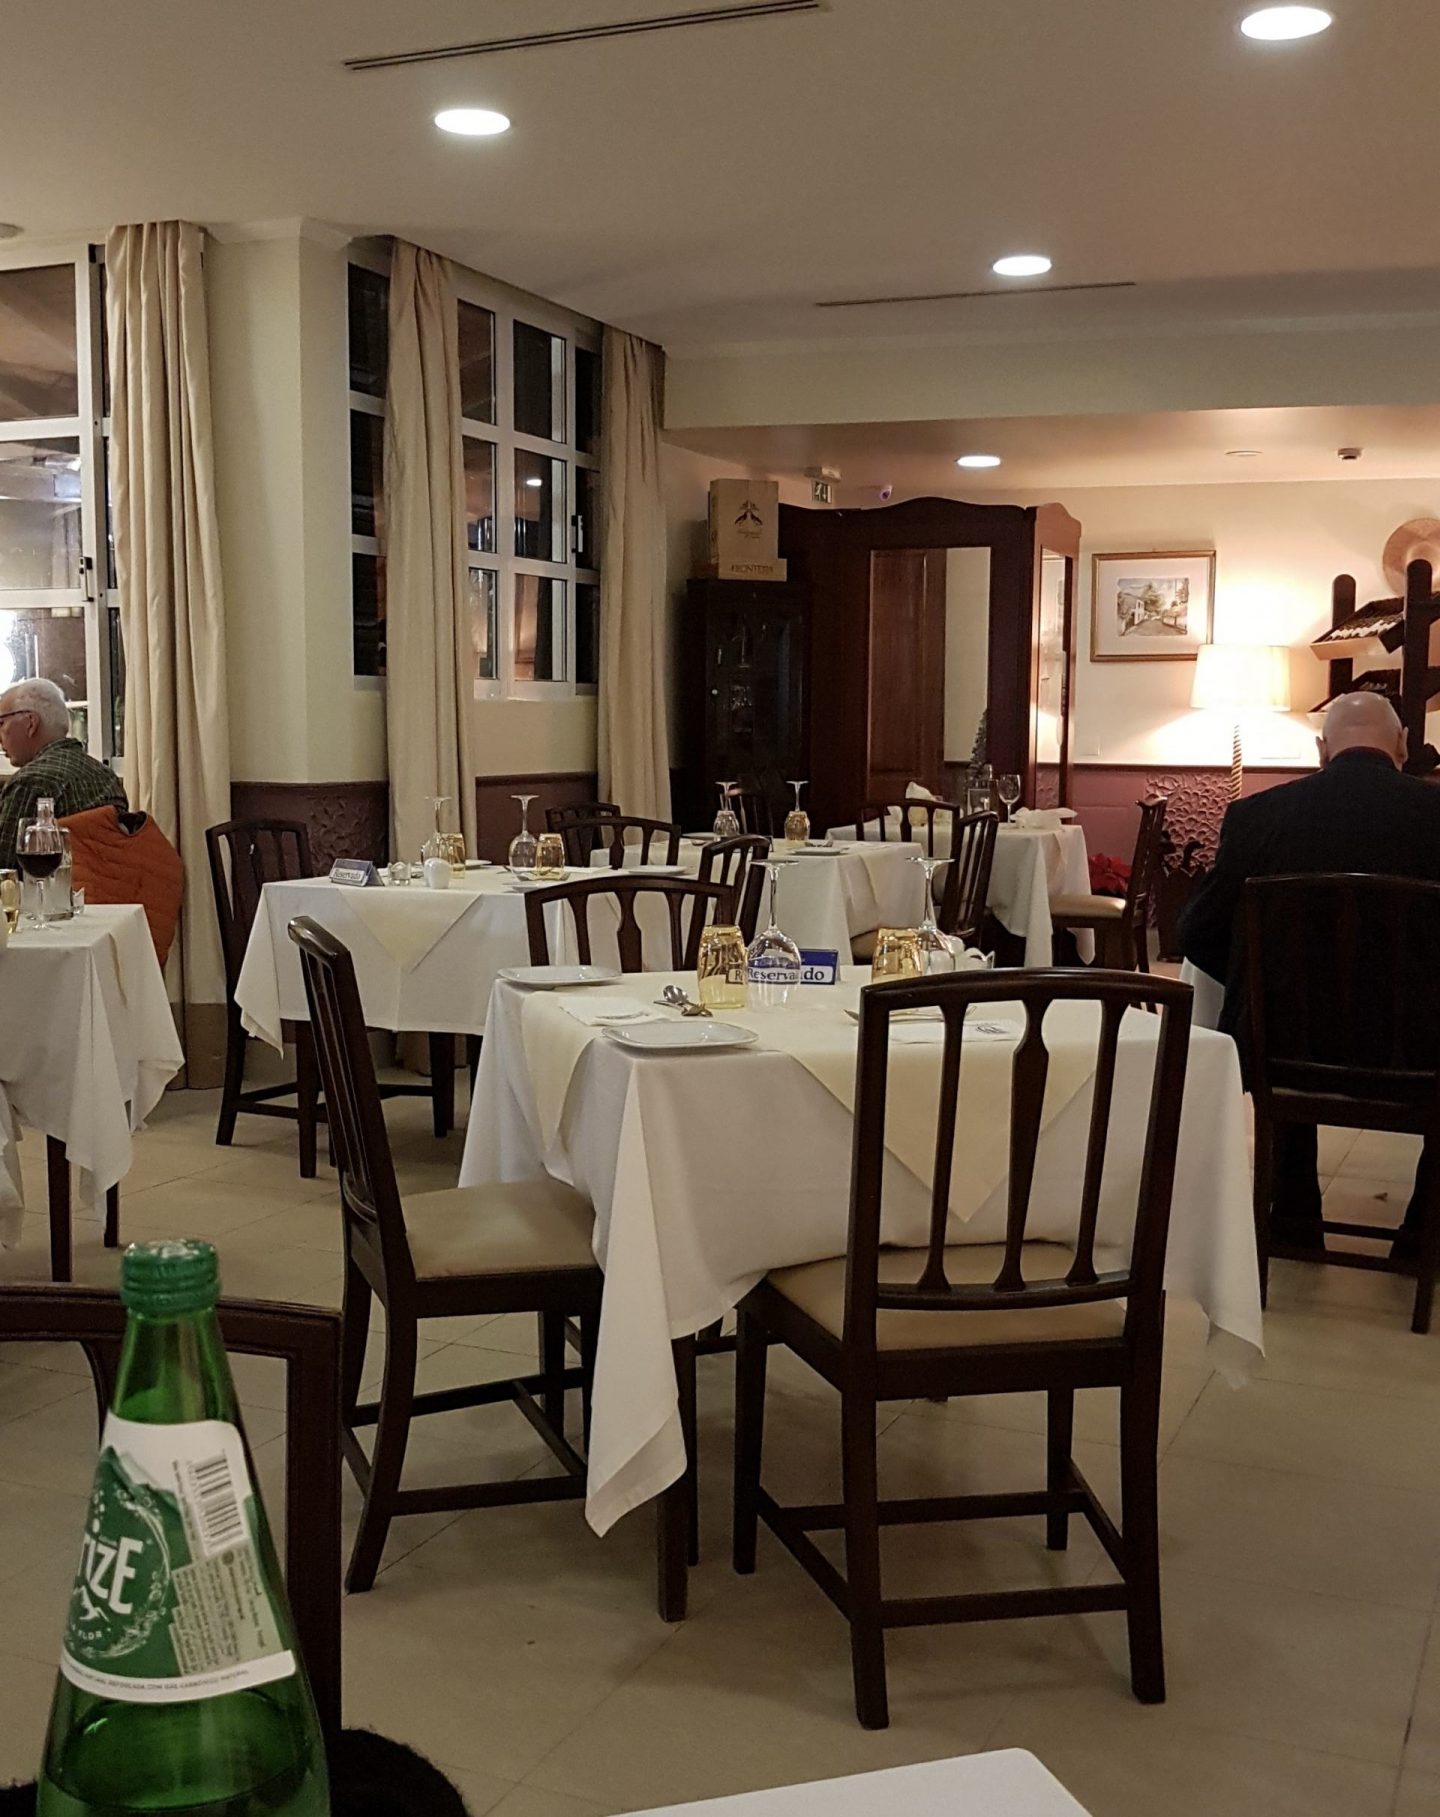 Erfahrung Bewertung Kritik Casal da Penha Funchal Madeira Portugal Foodblog Sternestulle